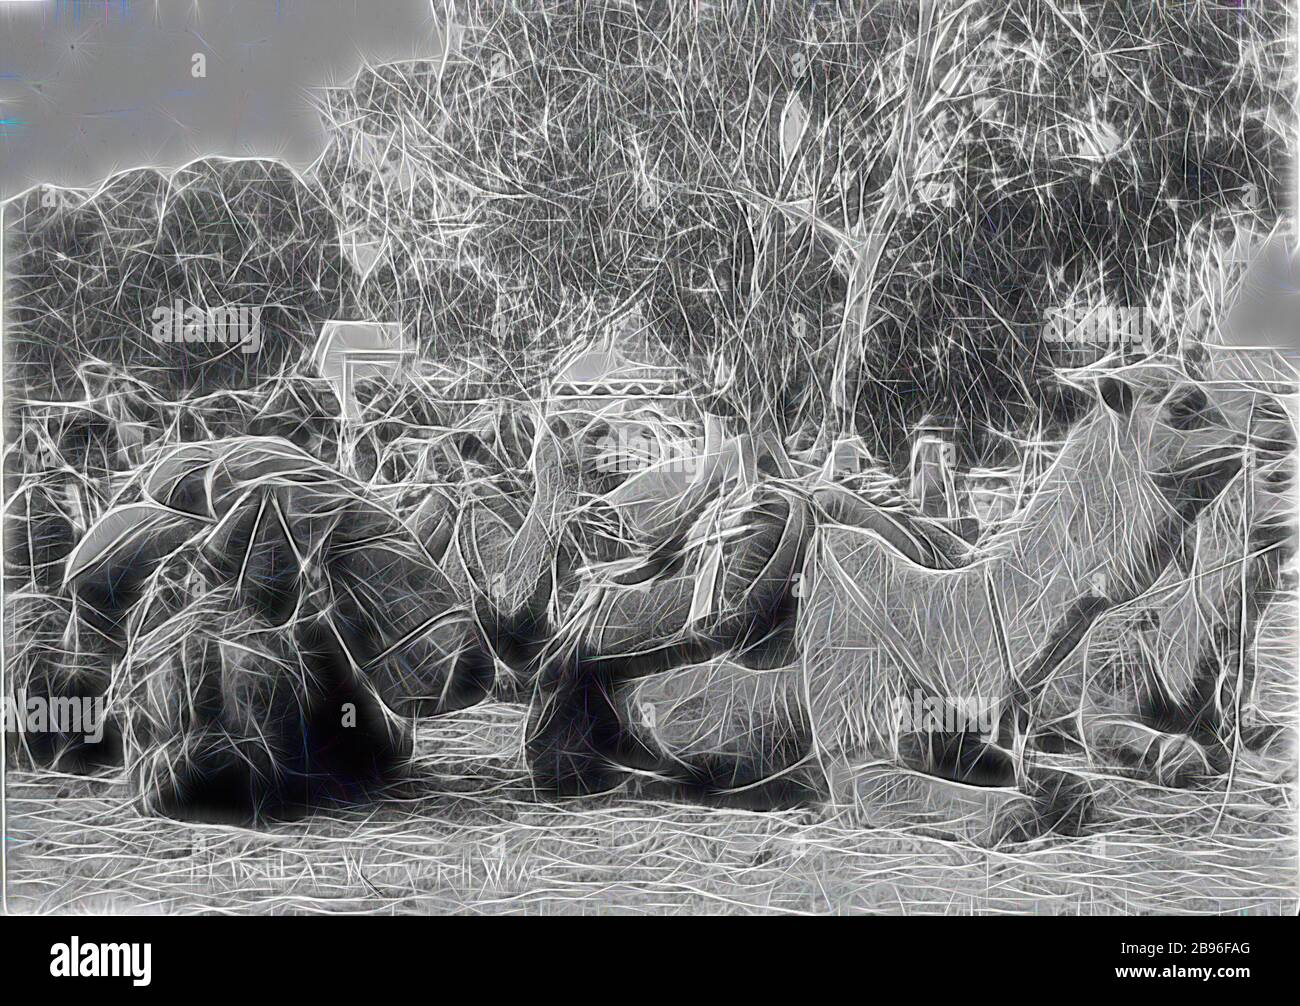 Negativ - 'Kamelzug in Wentworth Wharf', Wentworth, New South Wales, um 1905, EIN Kamelzug, der in Wentworth, New South Wales, ruht. Das Bild wurde von R. W. Martin um 1905 geschaffen. Eine Inschrift unten steht: 'Camel Train at Wentworth Wharf'. Die Kamele und ihre Kamele trugen mit Vorräten für die Bergbau- und Schafsindustrie ins Landesinnere, unterstützten den Bau der Overland Telegraph Line, der Canning Stock Route, der großen Zaunlinien und der Trans-Australia, die von Gibon neu gestaltet wurden, und entwerfen ein warmes, fröhliches Leuchten von Helligkeit und Lichtstrahlen. Klassische Kunst neu erfunden mit einem Mo Stockfoto